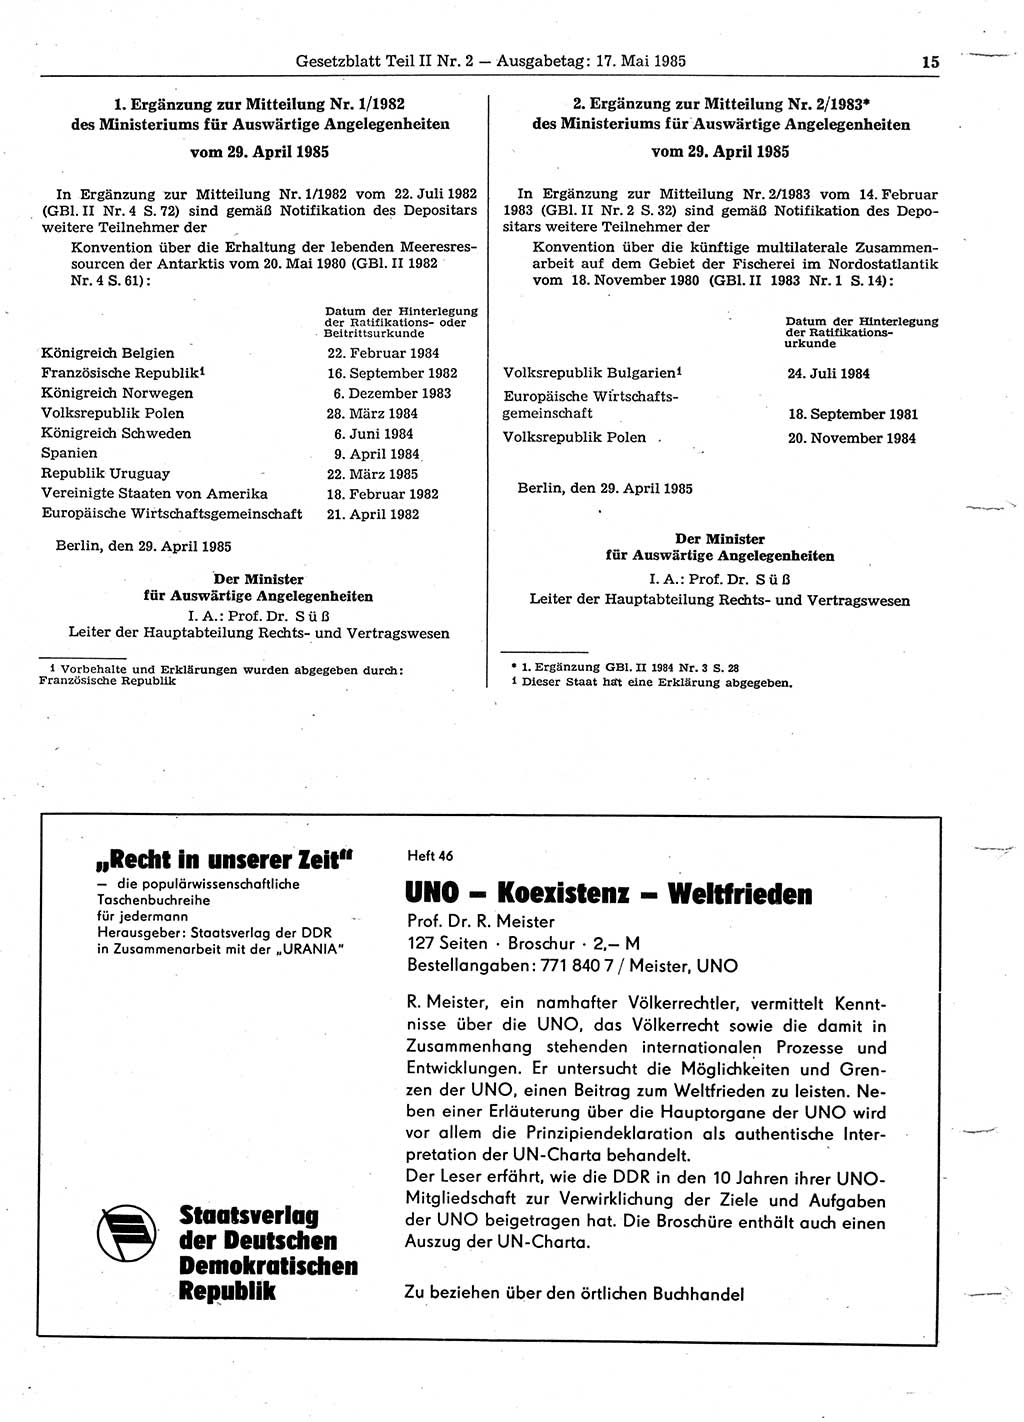 Gesetzblatt (GBl.) der Deutschen Demokratischen Republik (DDR) Teil ⅠⅠ 1985, Seite 15 (GBl. DDR ⅠⅠ 1985, S. 15)